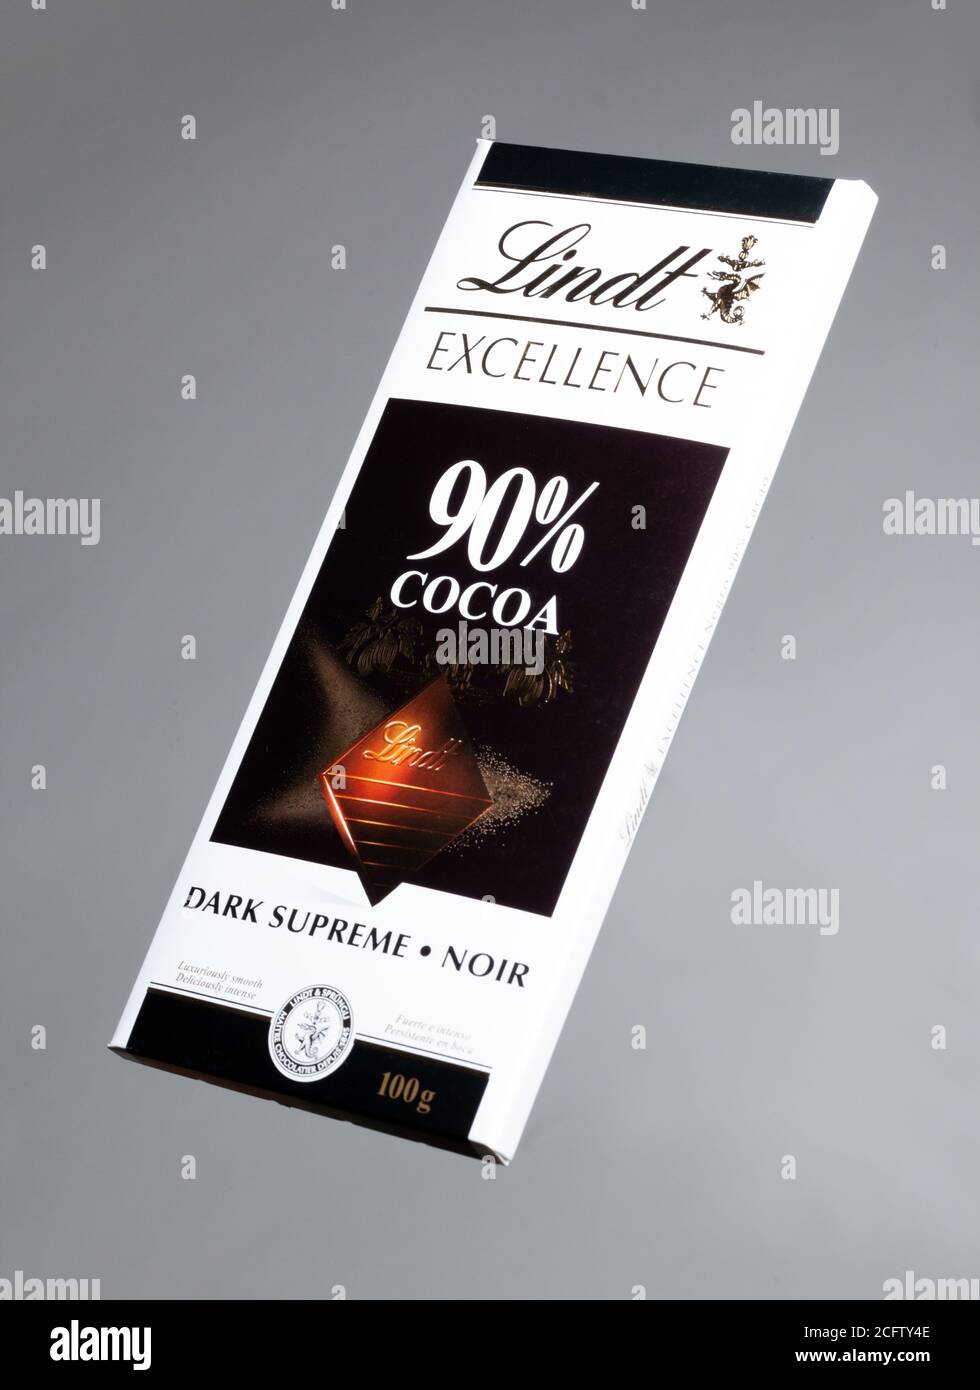 Lindt cioccolato fondente al 90% di cacao Foto Stock